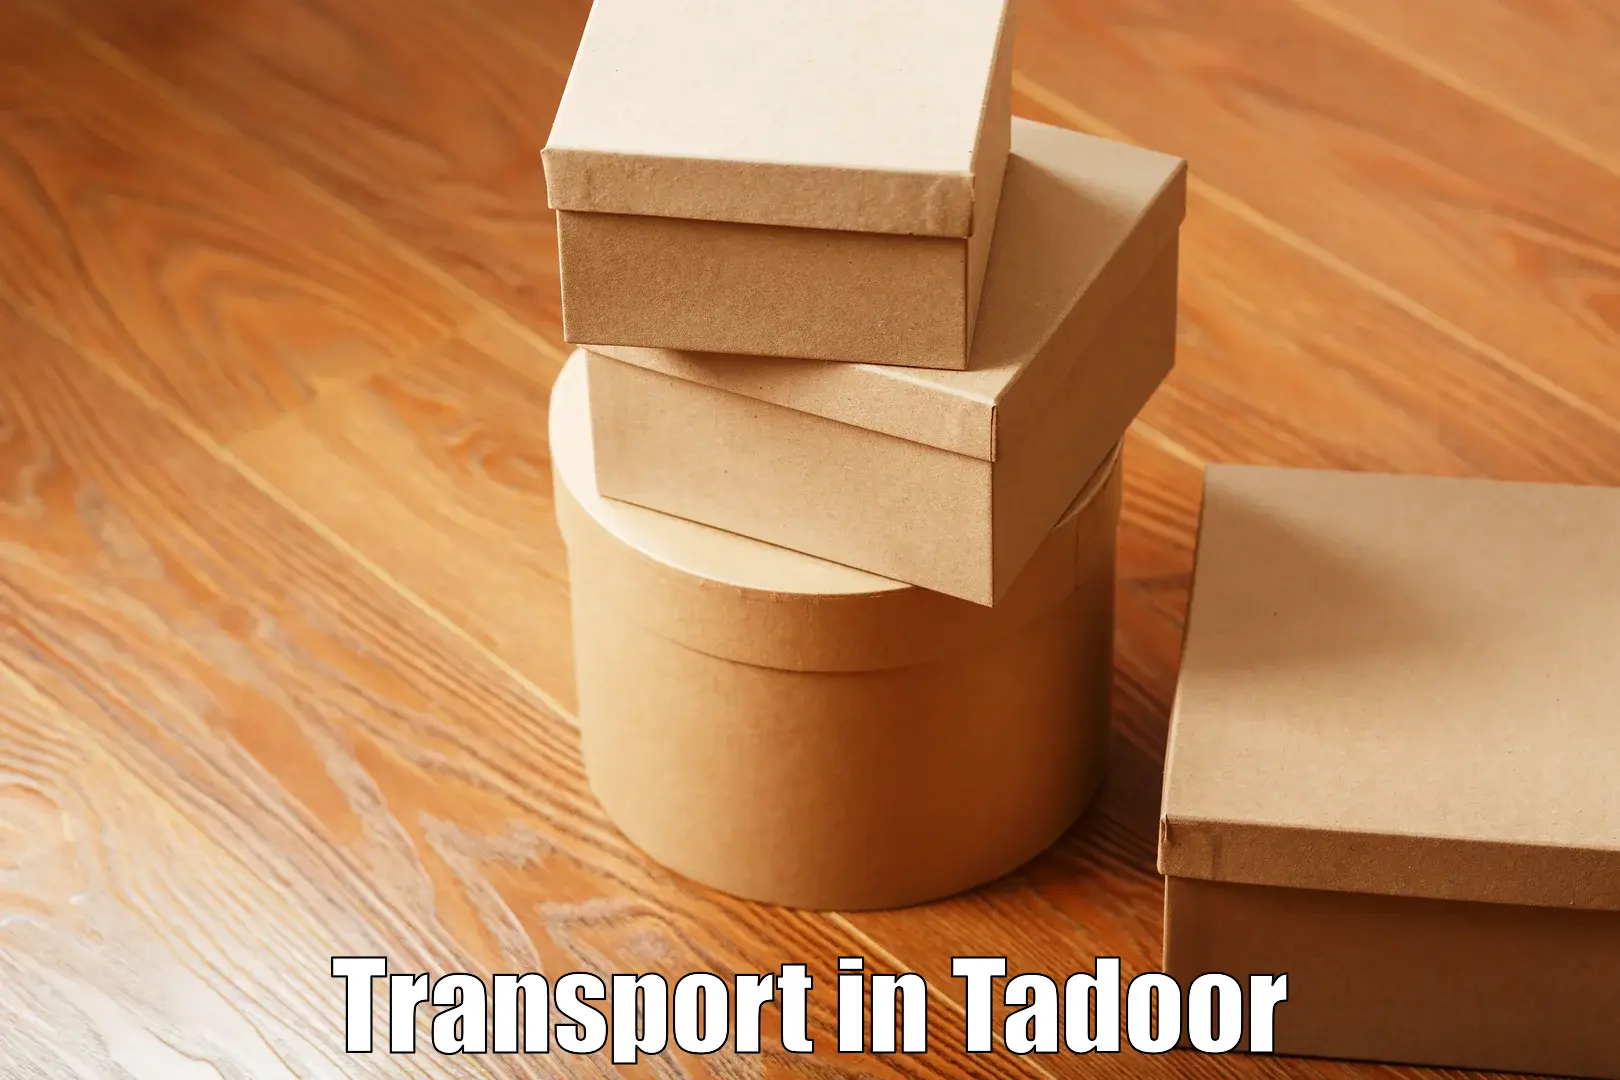 Online transport in Tadoor